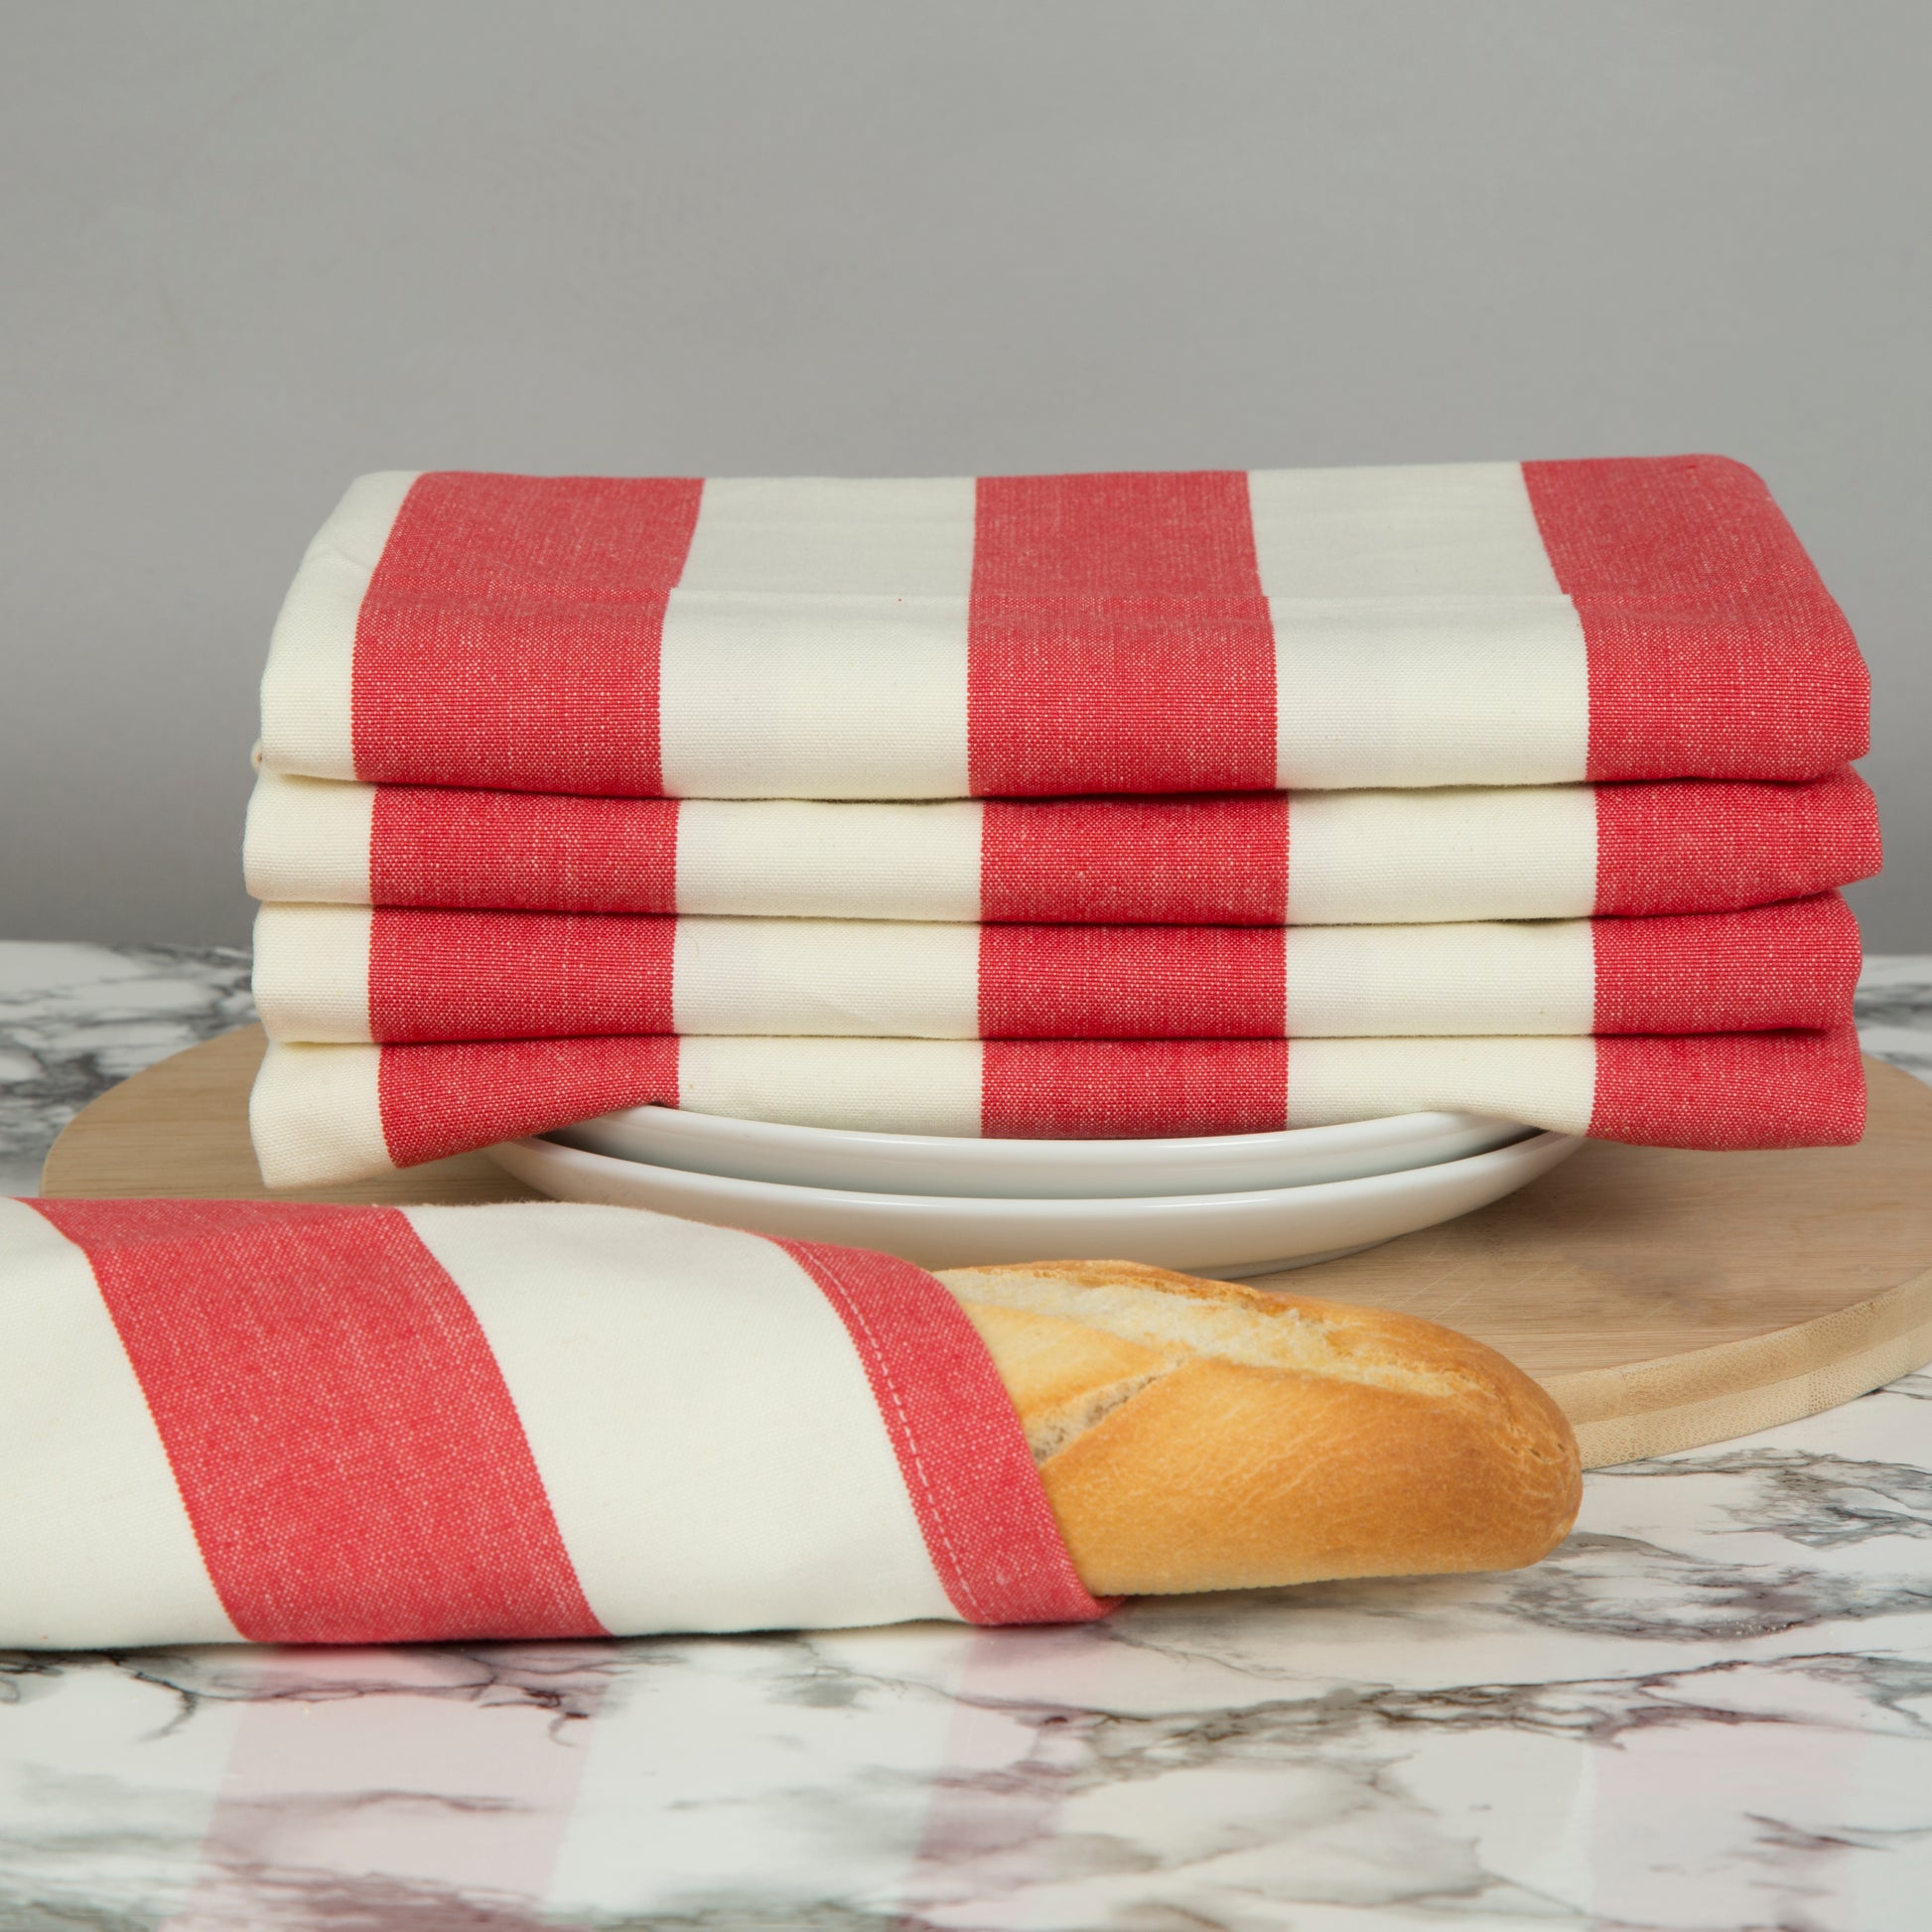 Cornish Linen Tea Towels